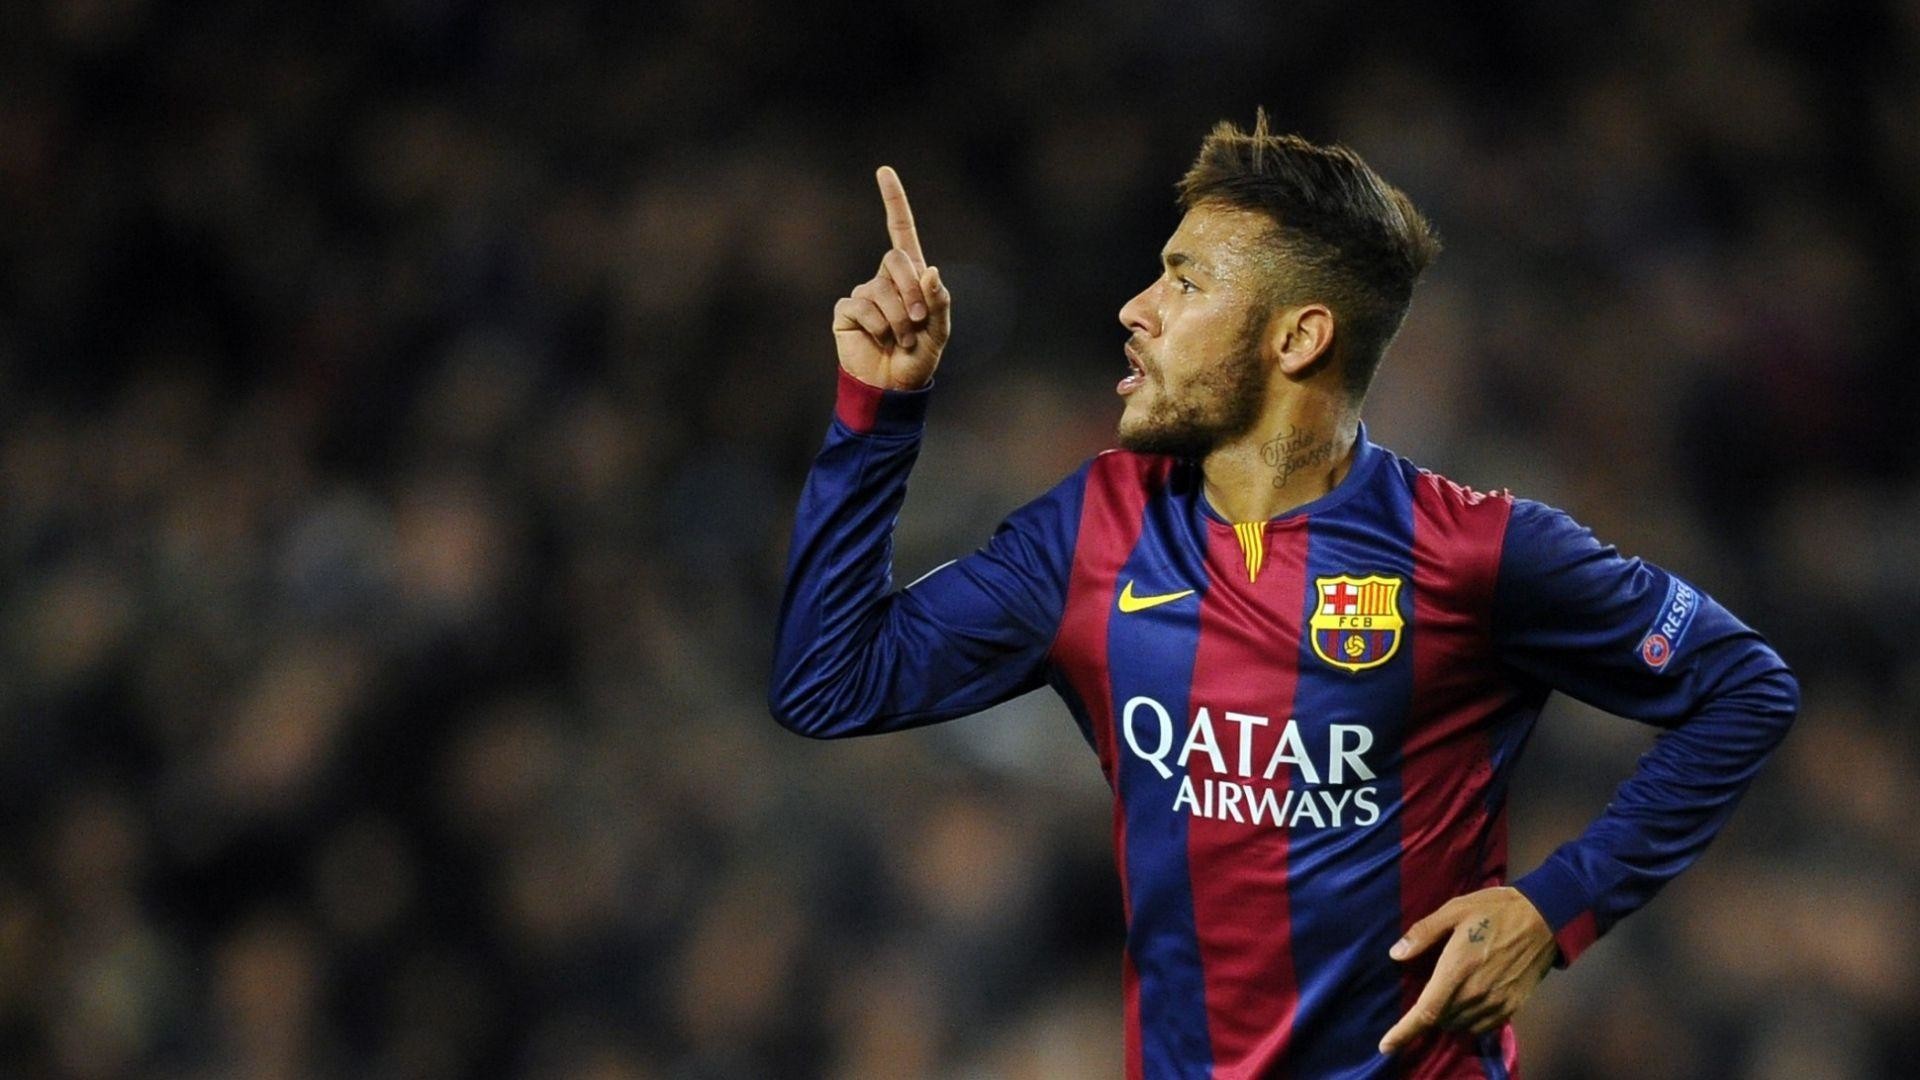 neymar hd wallpaper 1080p,football player,player,soccer player,team sport,sports